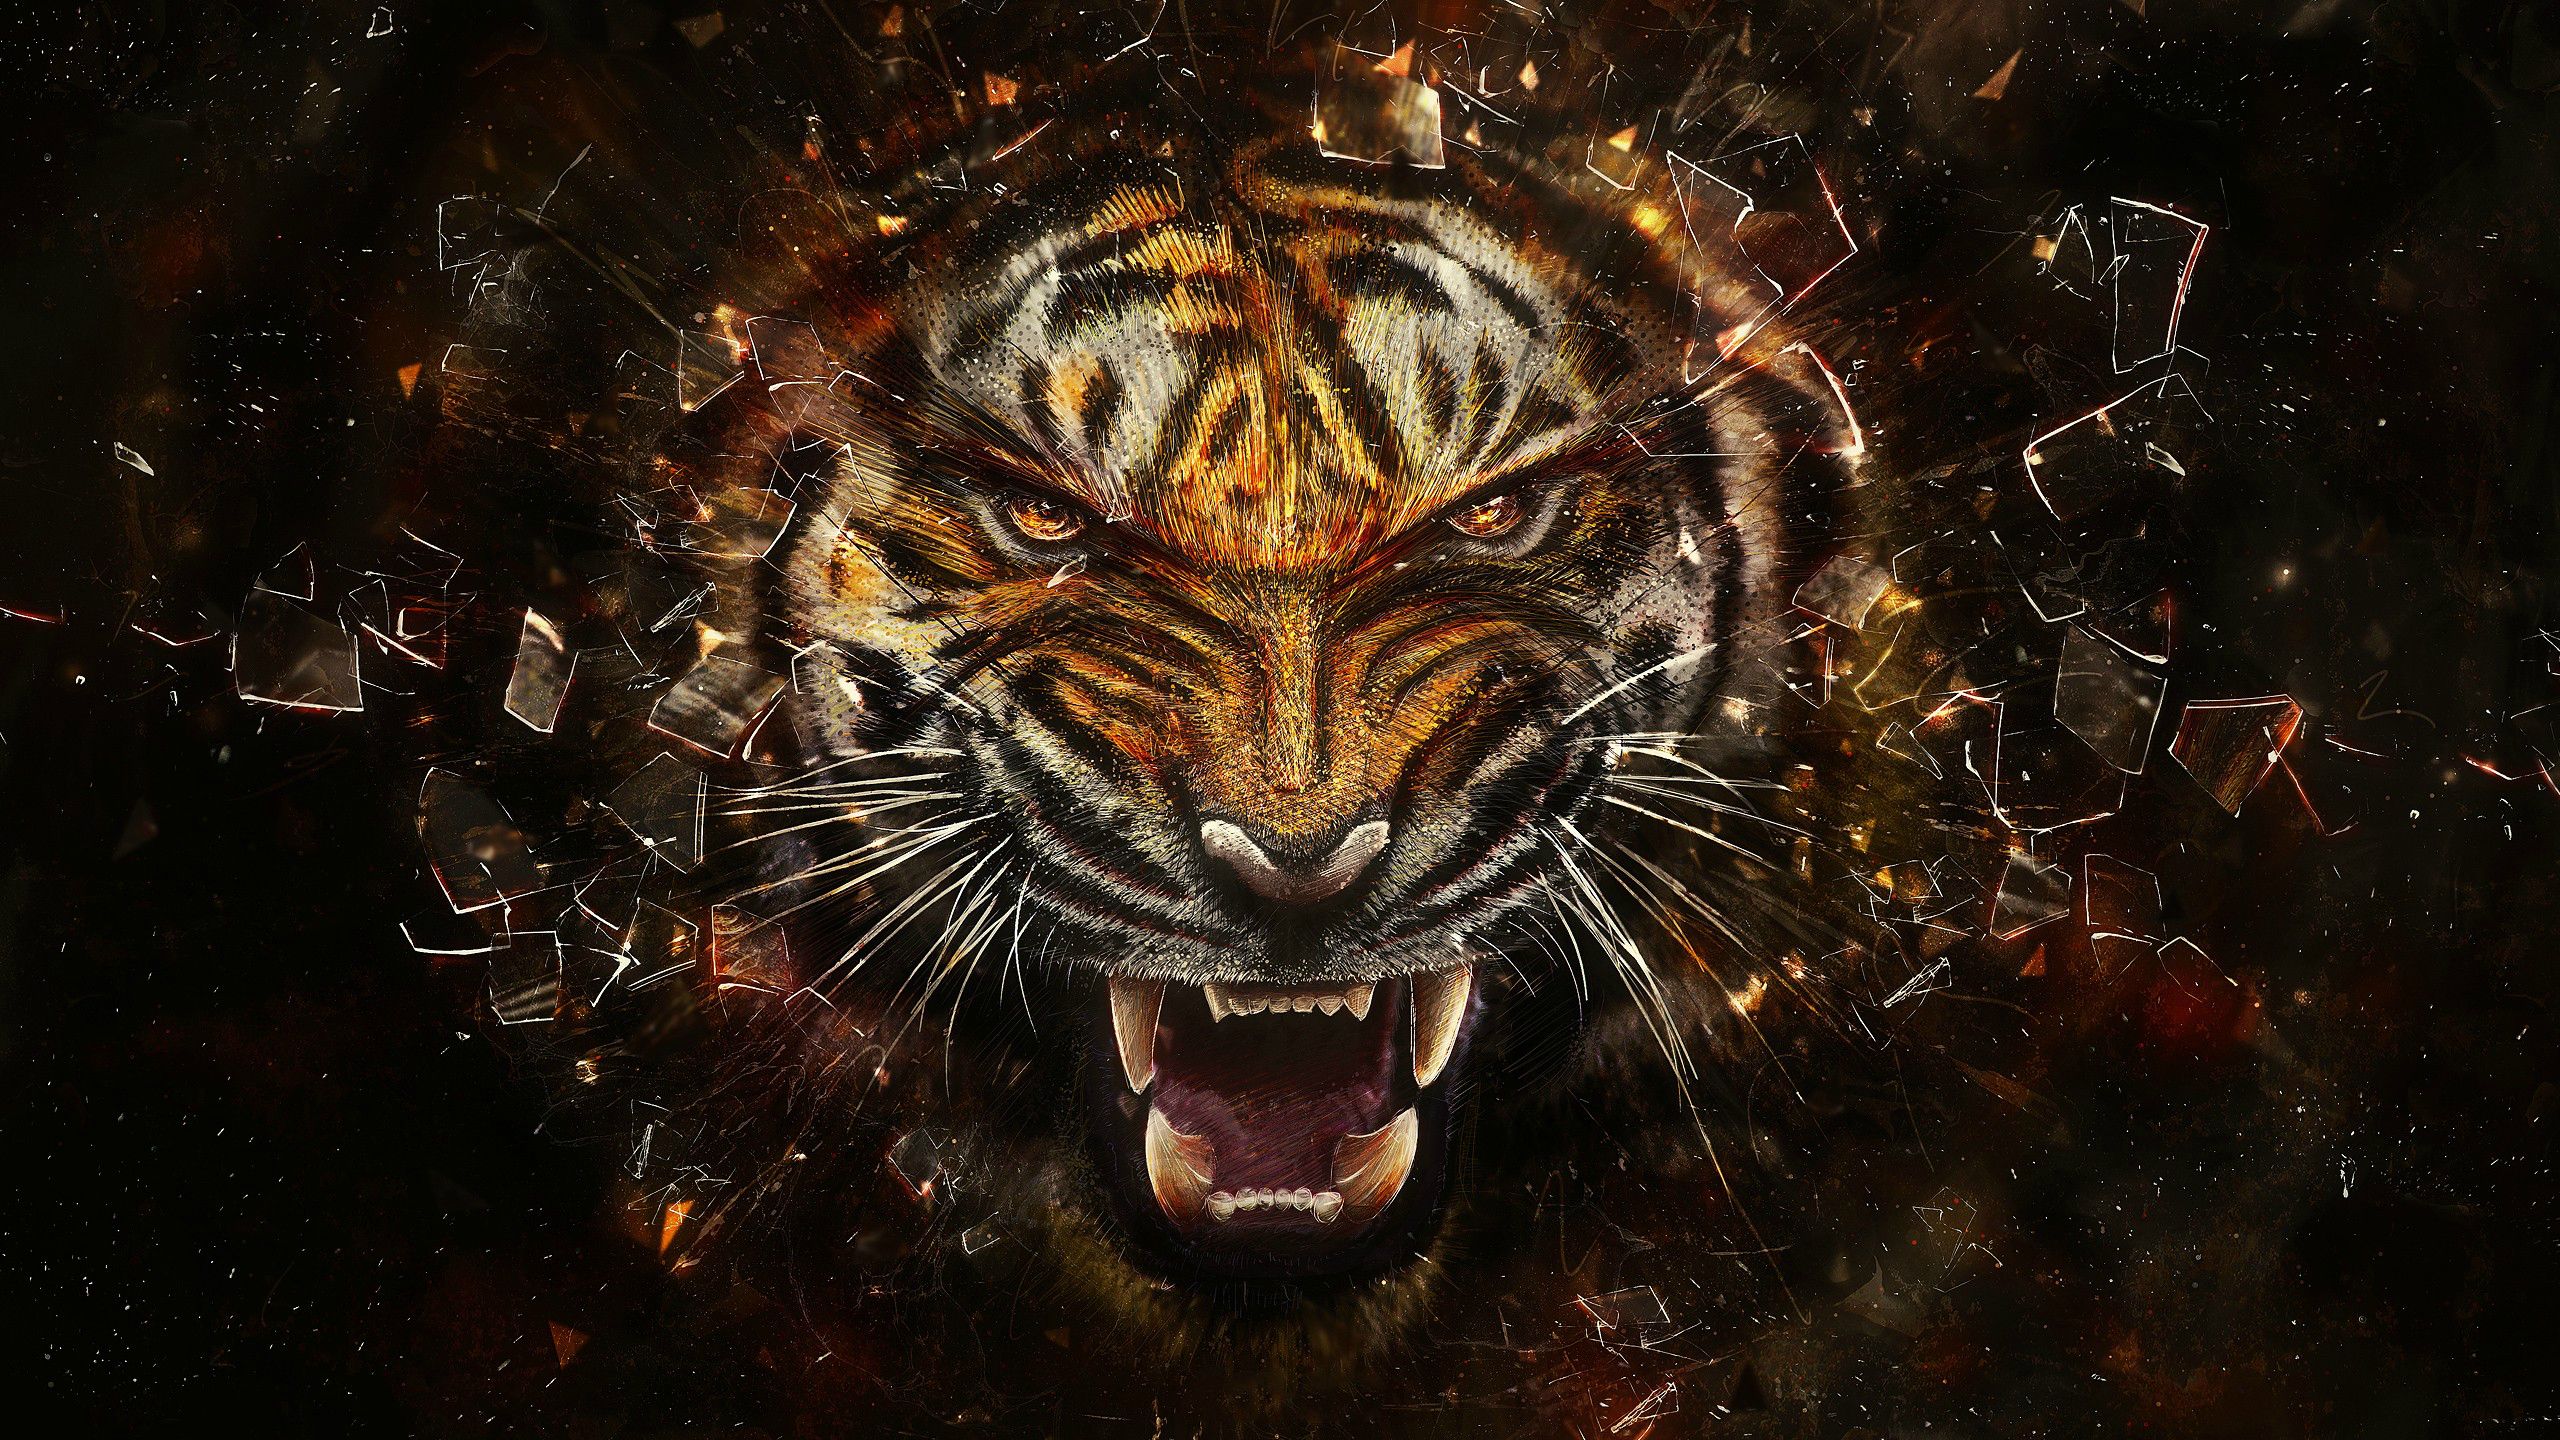 Tiger Going Through Glass - HD Wallpaper 